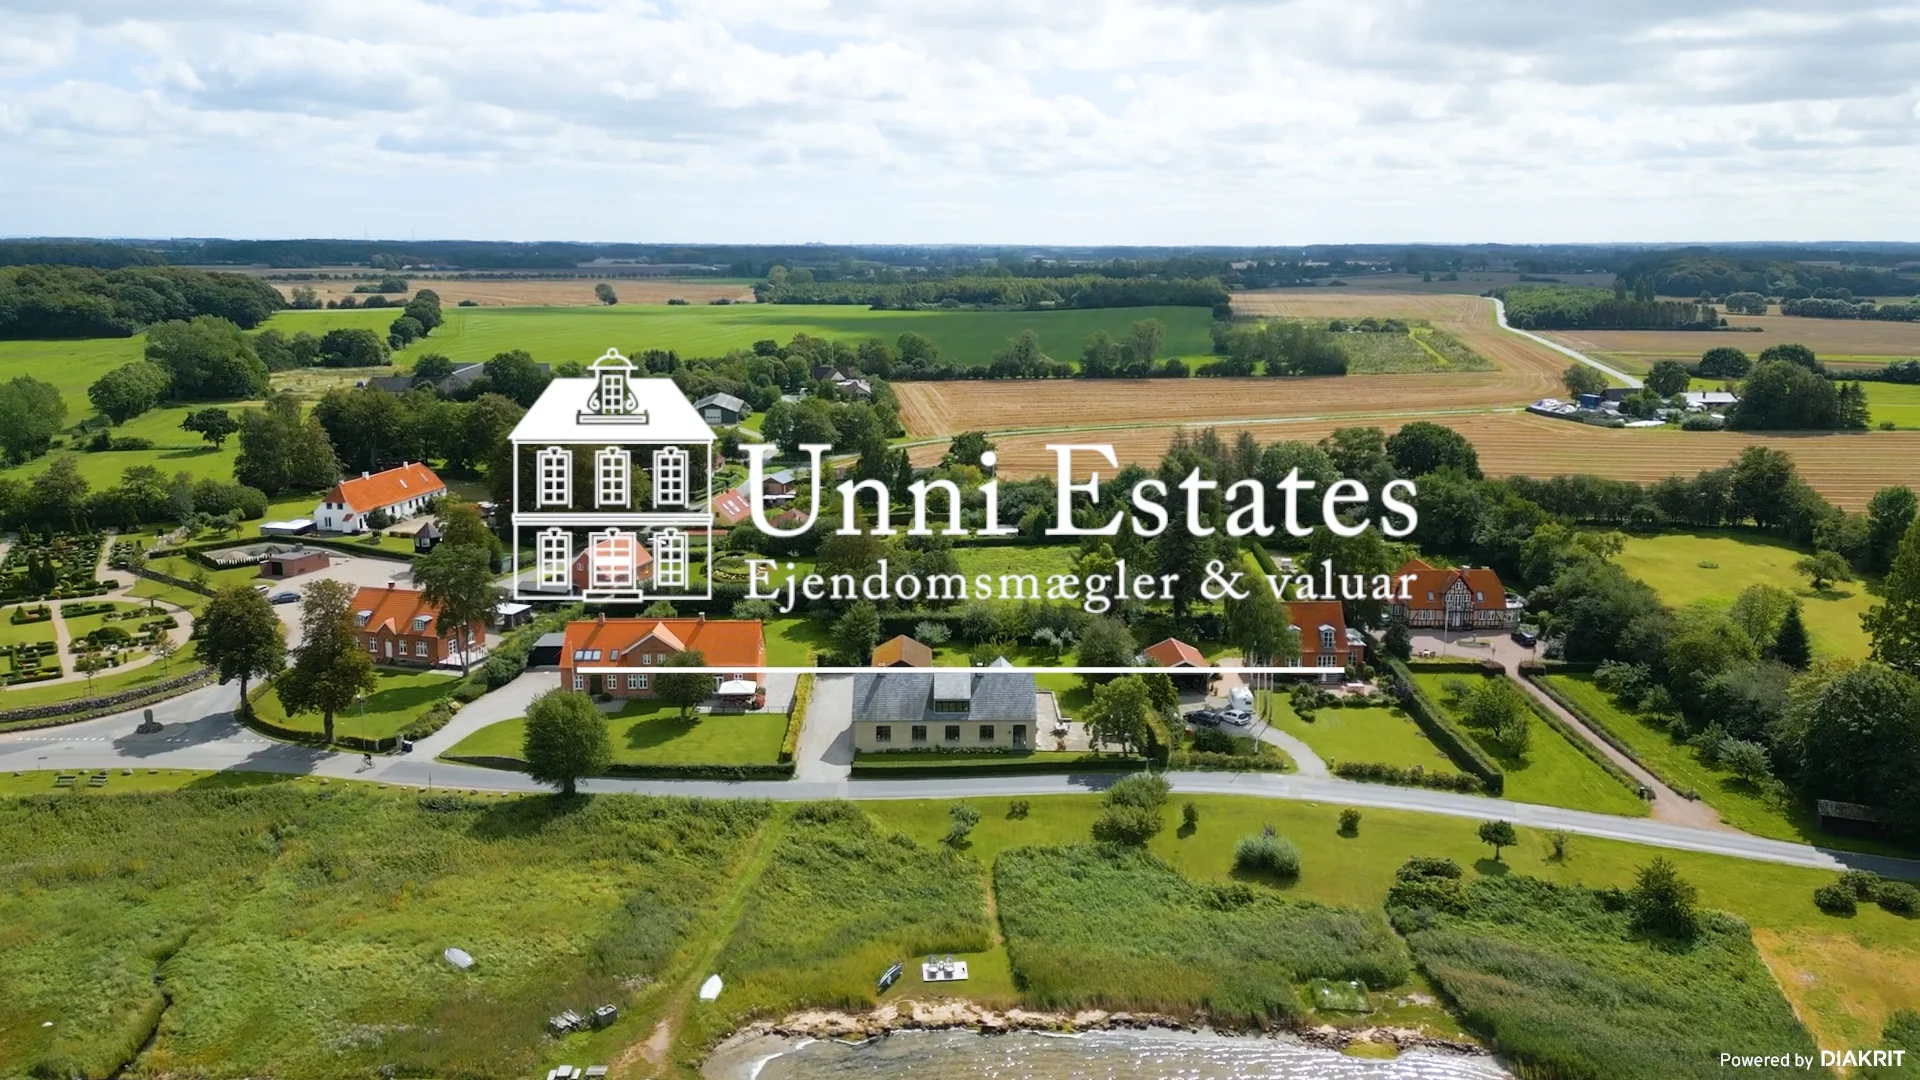 Ulriksholmvej 9, Kerteminde Unni Estates on Vimeo